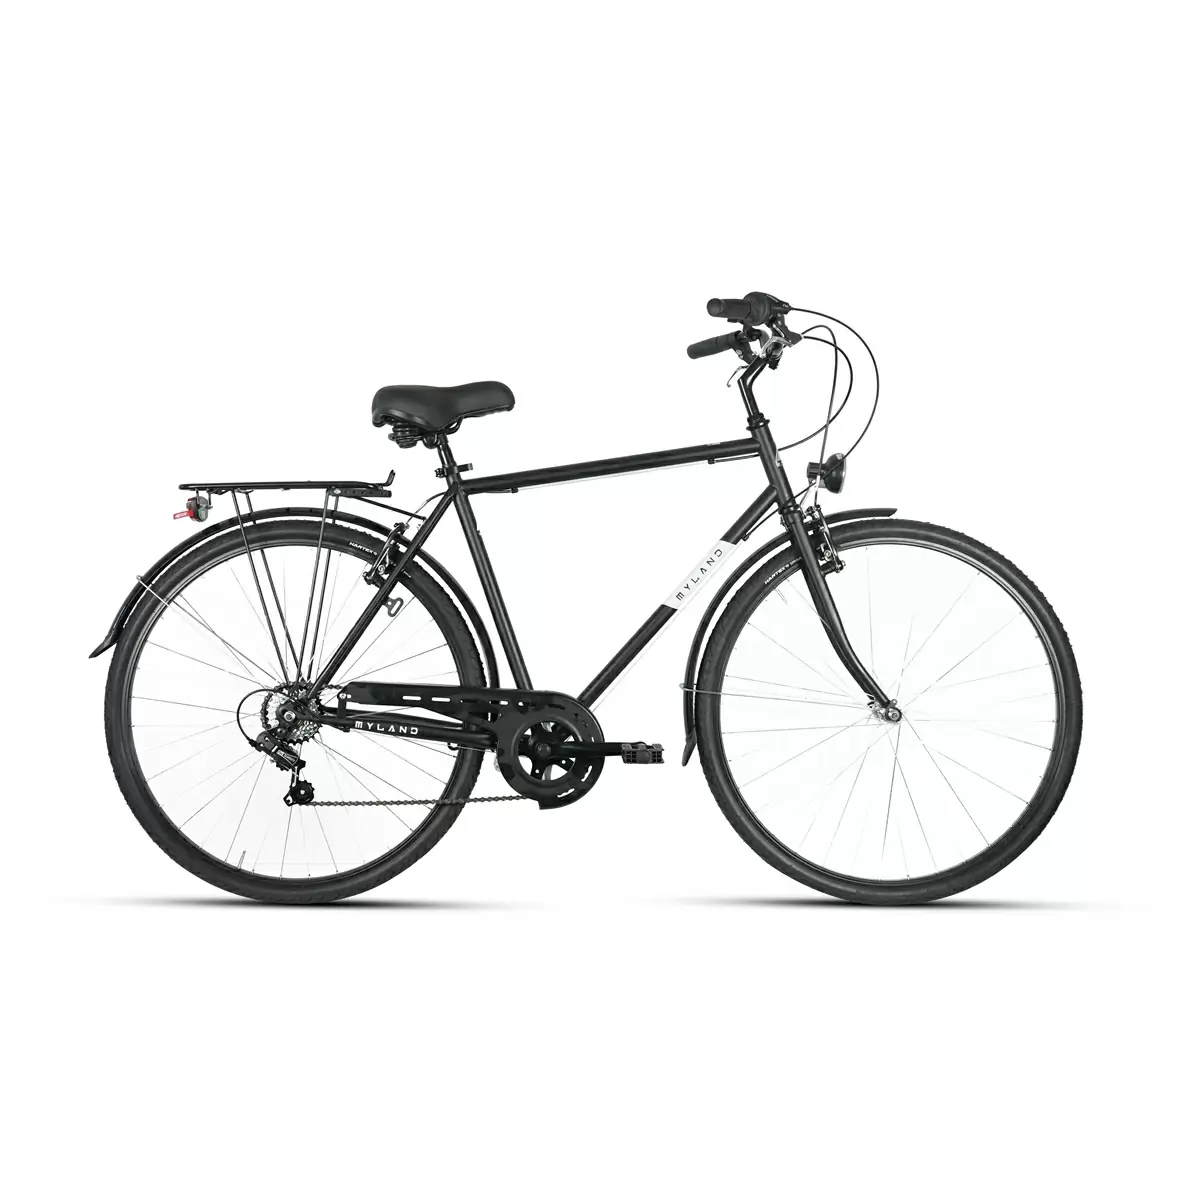 City Bike acciaio Dosso 28.4 28'' 7v nero Uomo taglia L - image